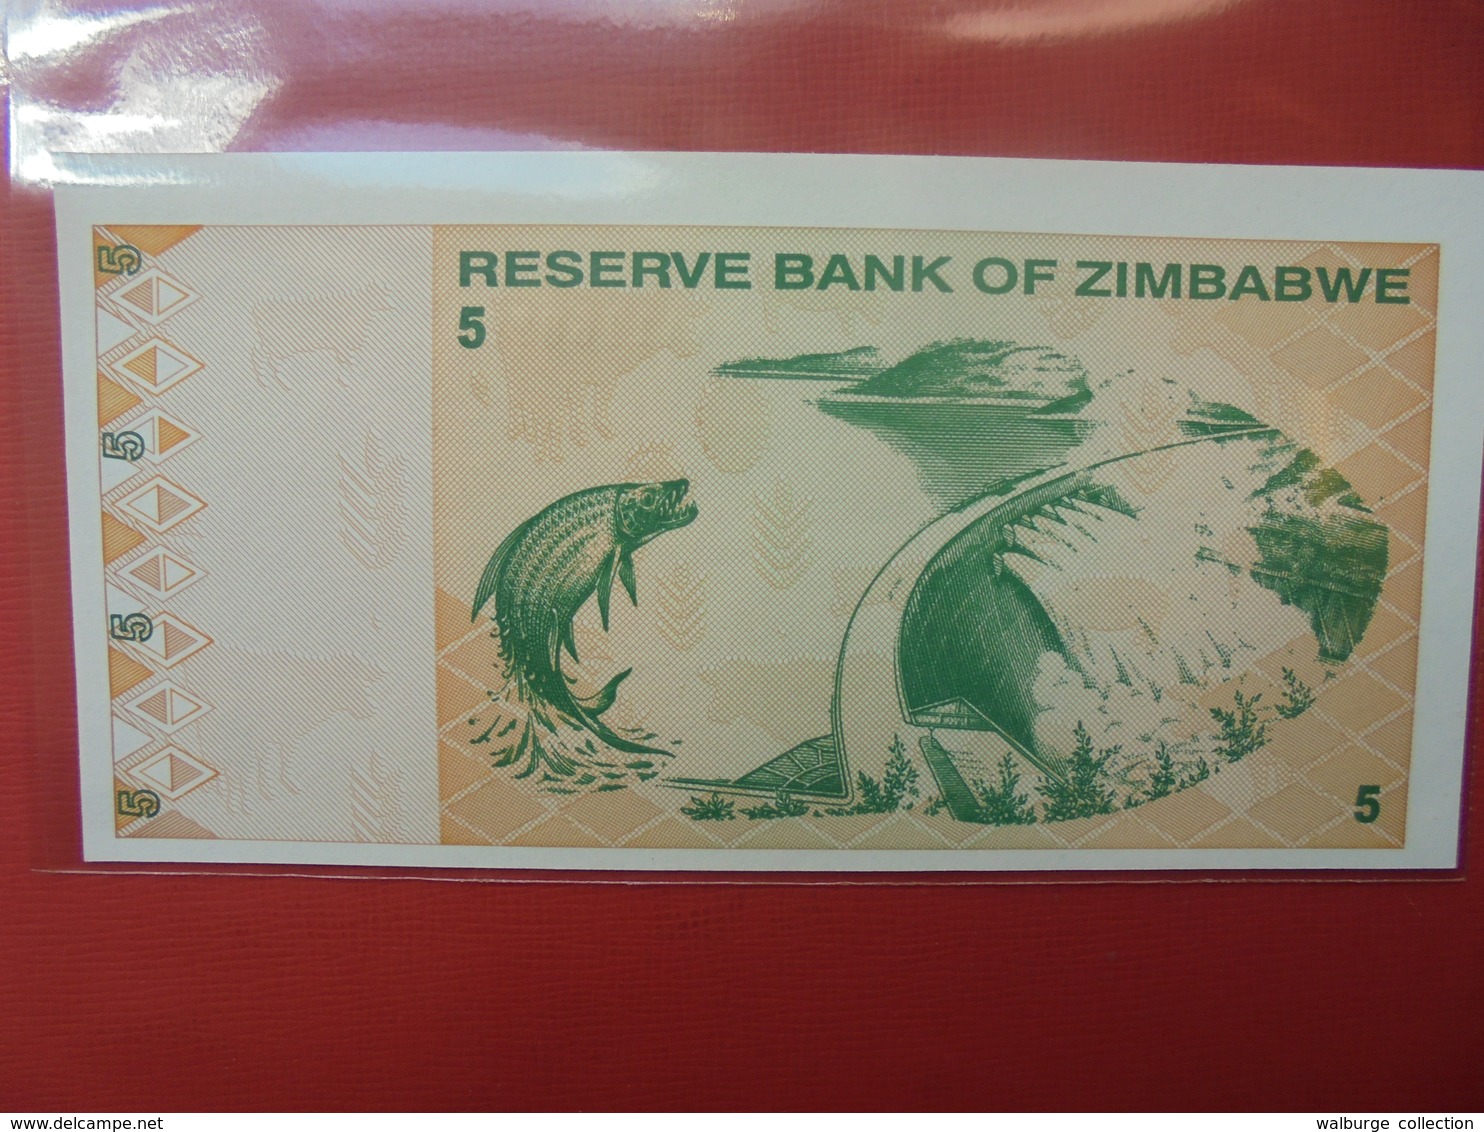 ZIMBABWE 5$ 2009 PEU CIRCULER/NEUF - Simbabwe